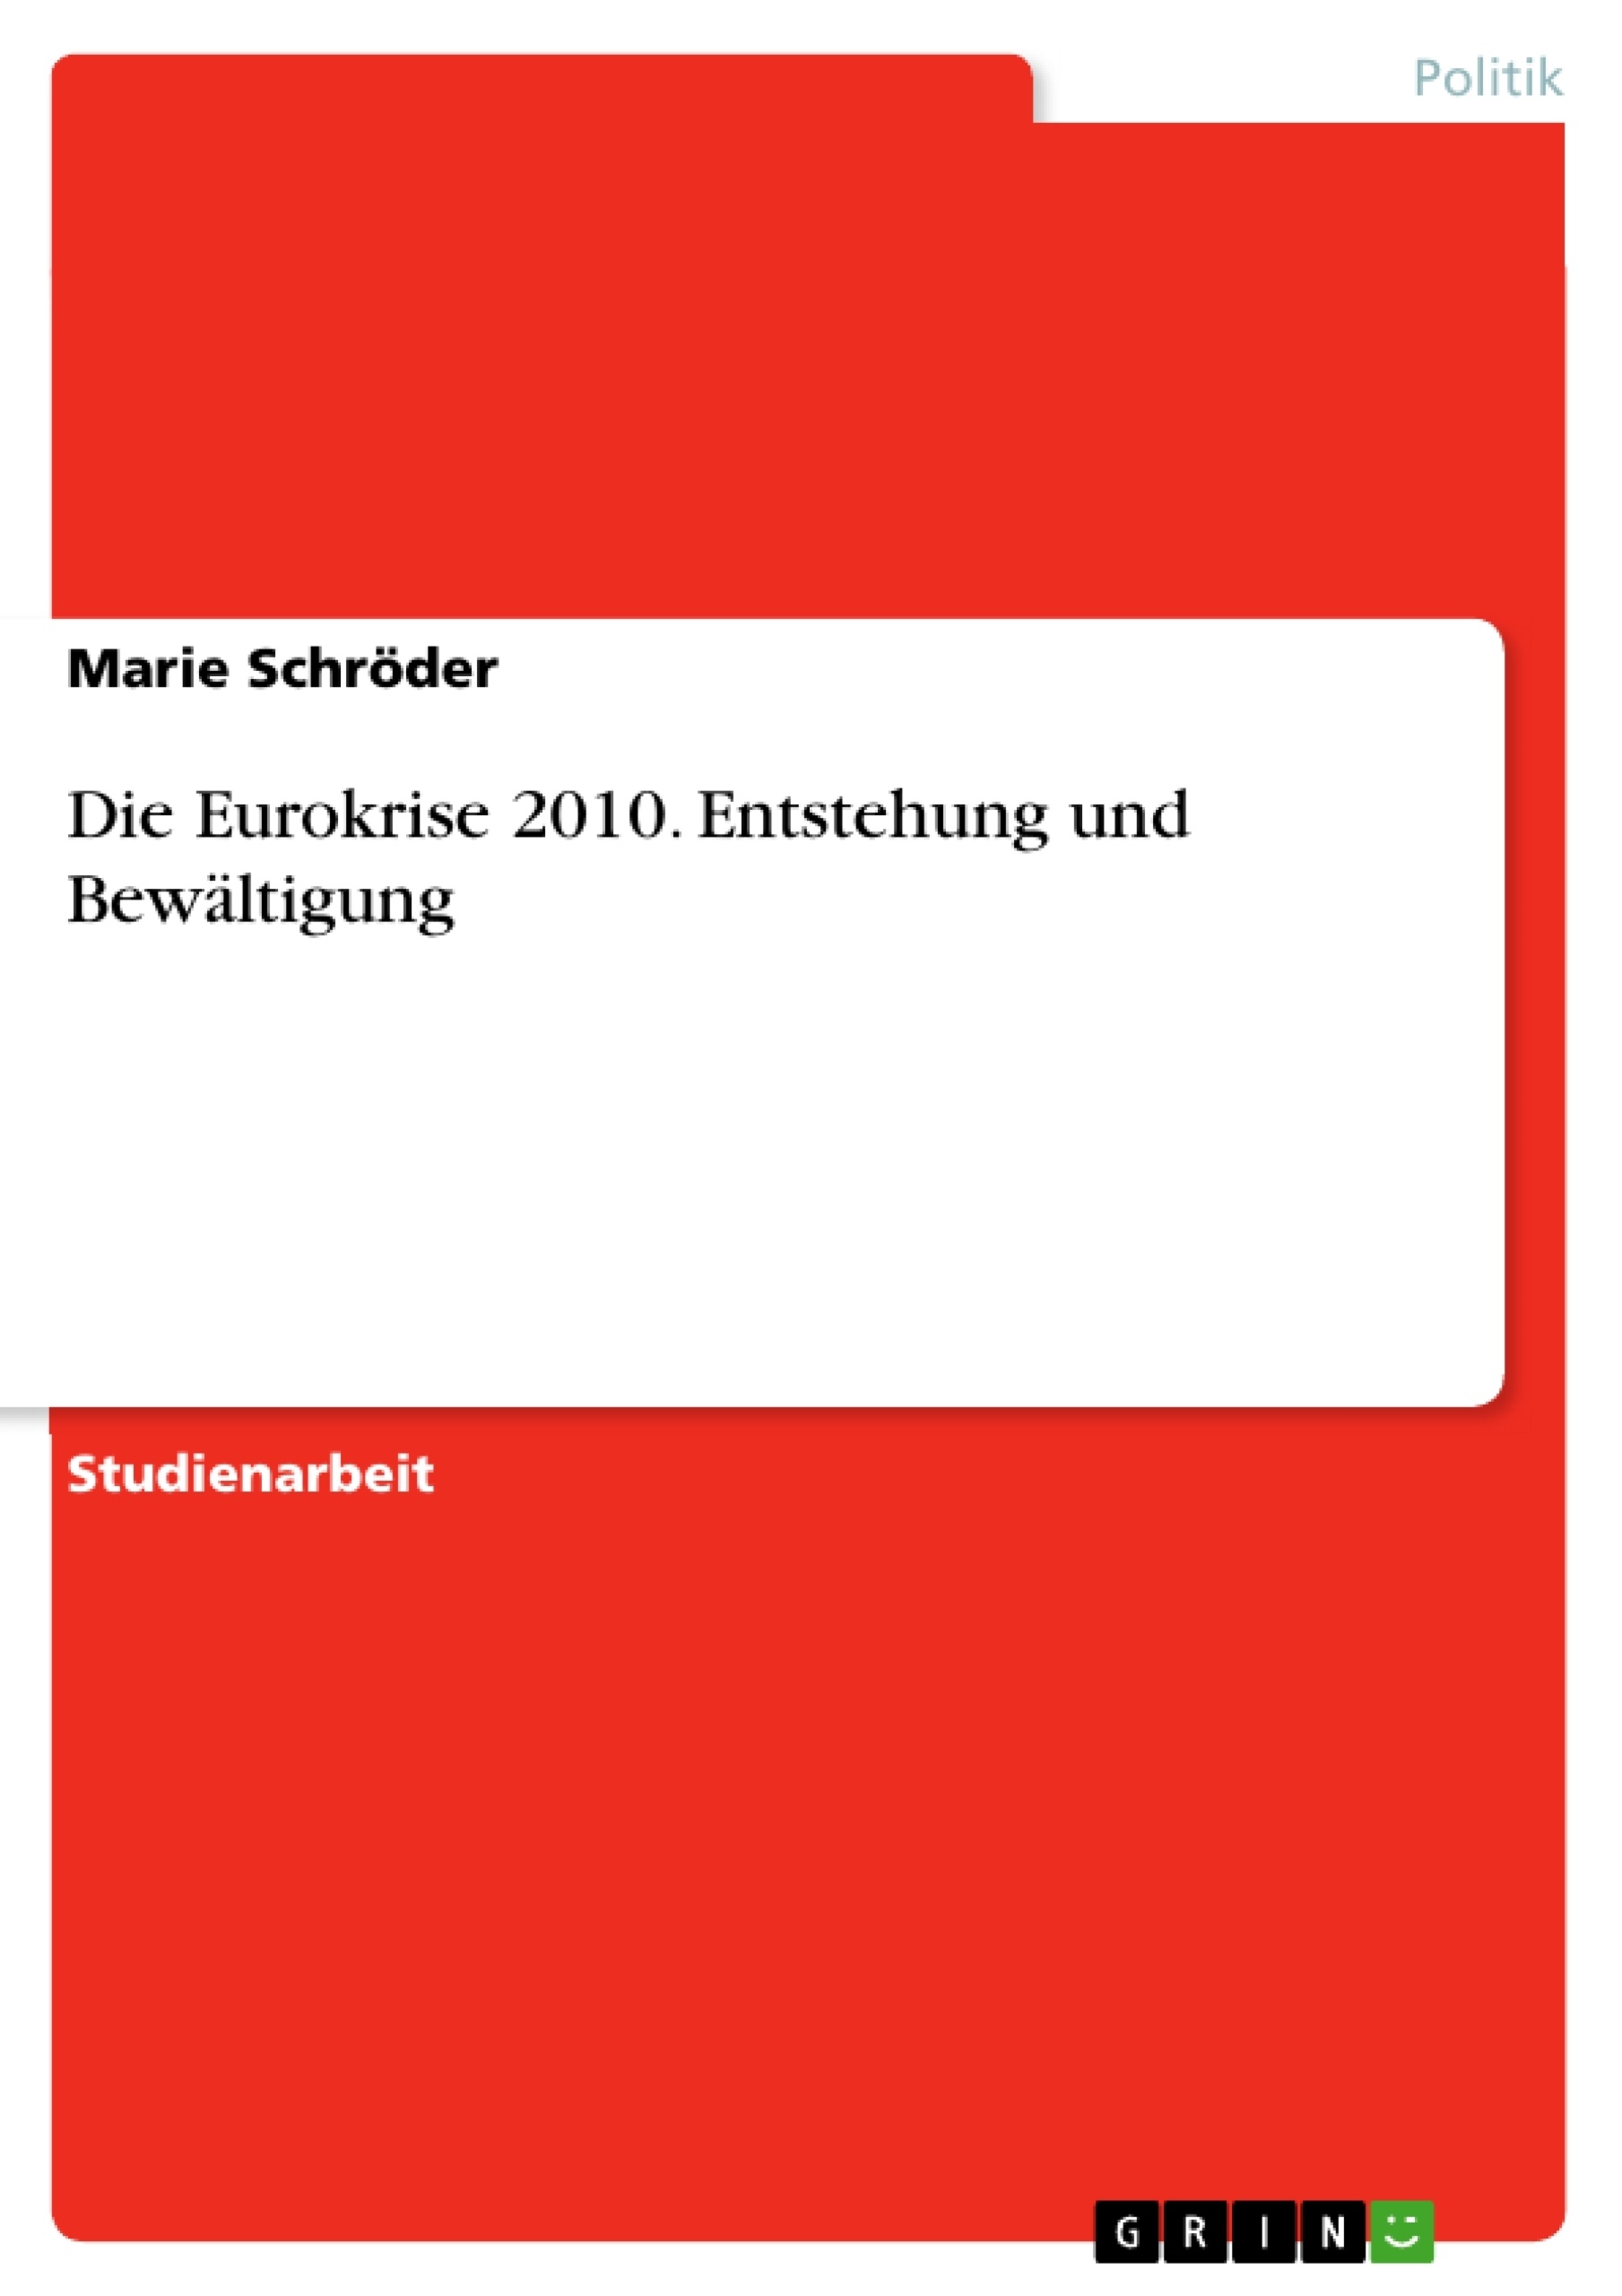 Title: Die Eurokrise 2010. Entstehung und Bewältigung